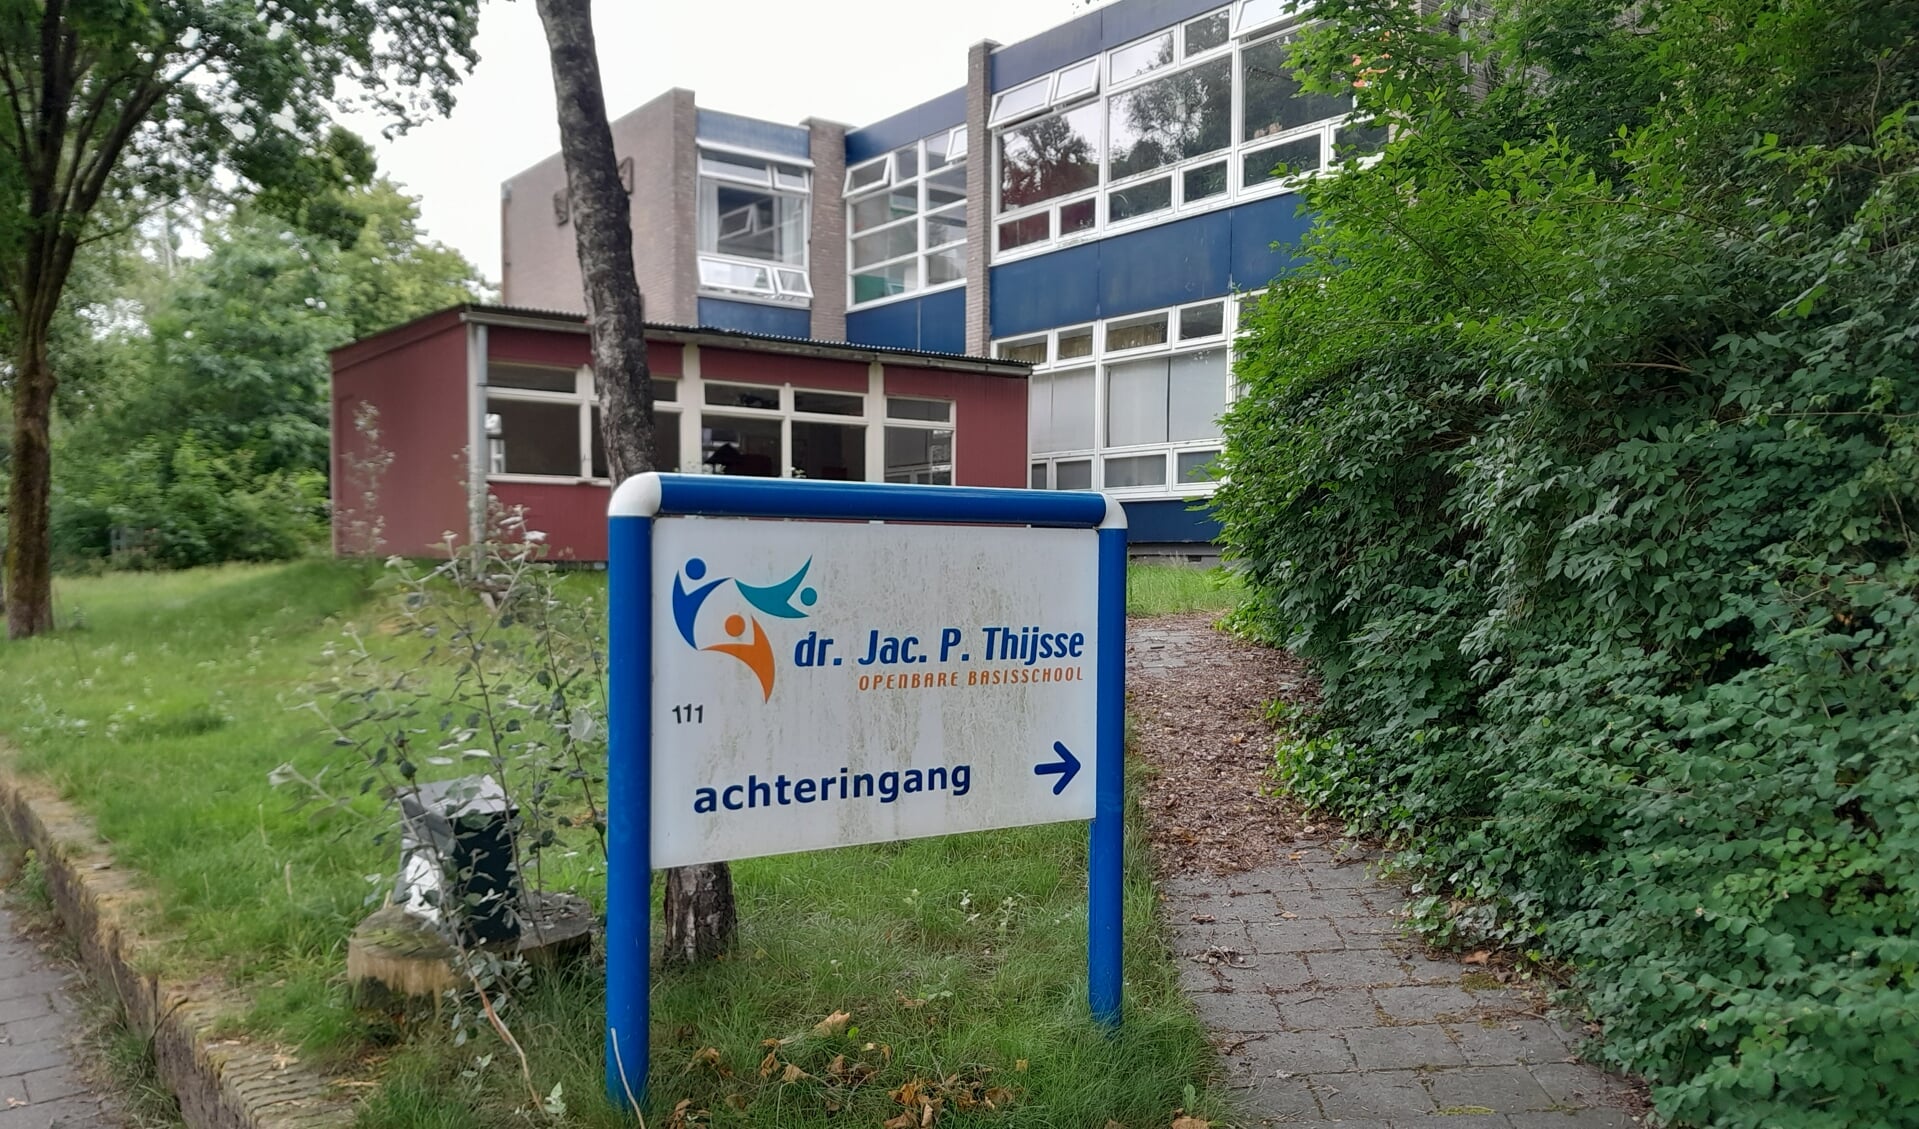 De voormalige basisschool dr. Jac. P. Thijsse aan de Bram Streeflandweg in Renkum.